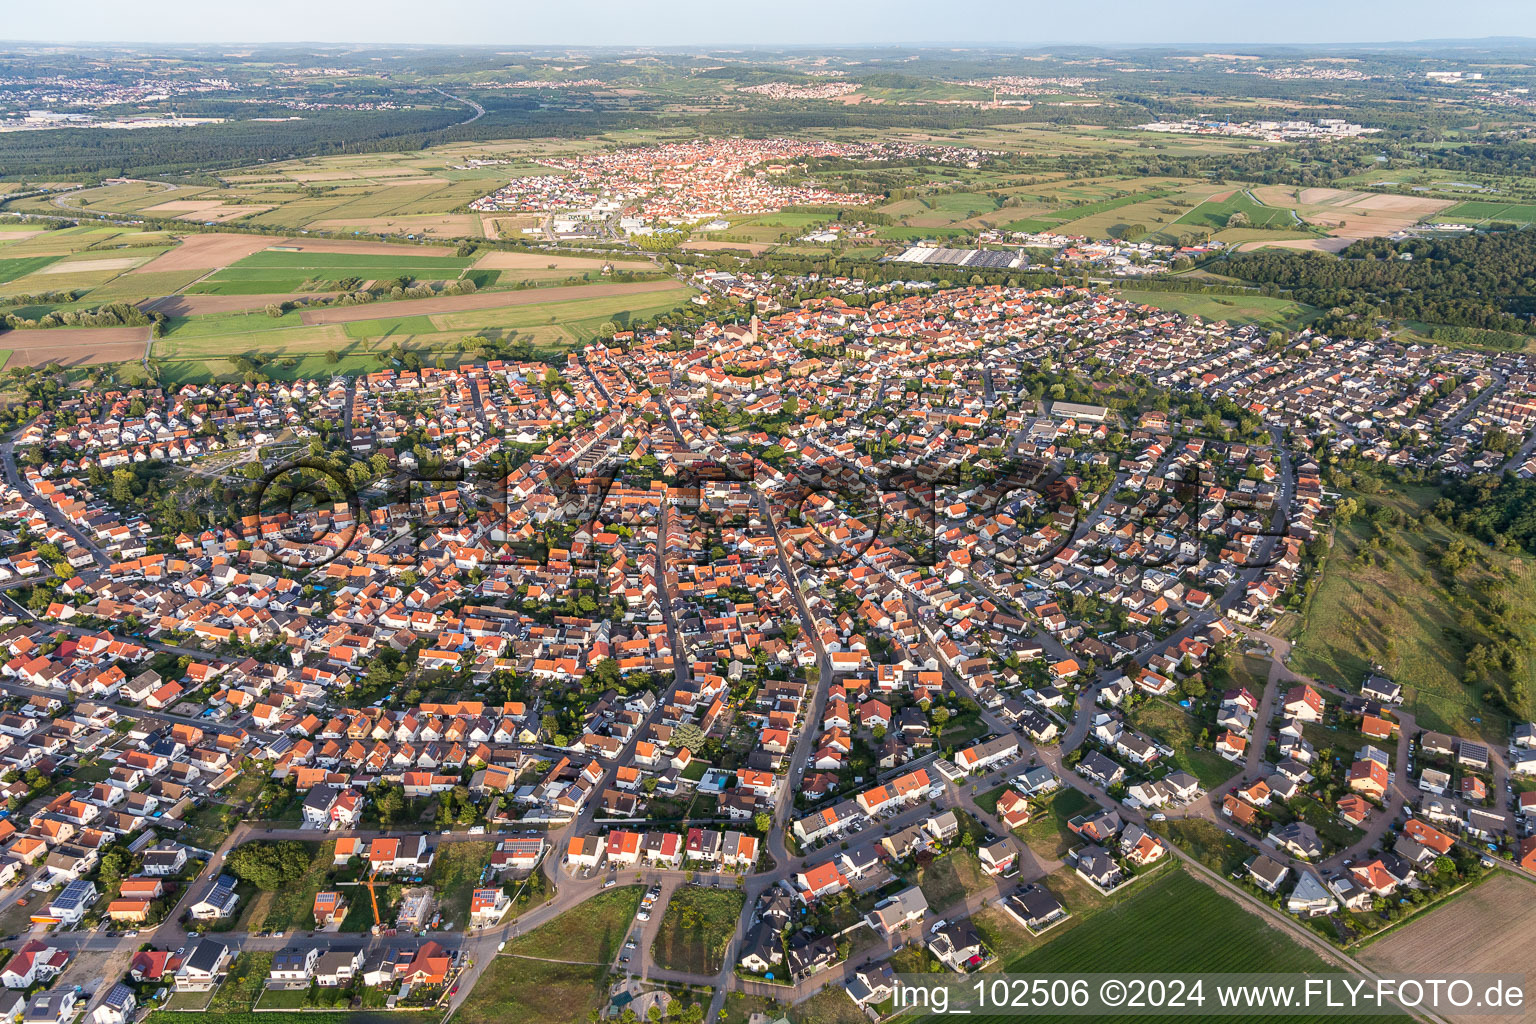 Luftbild von Ortsansicht der Straßen und Häuser der Wohngebiete in Sankt Leon in St. Leon-Rot im Bundesland Baden-Württemberg, Deutschland